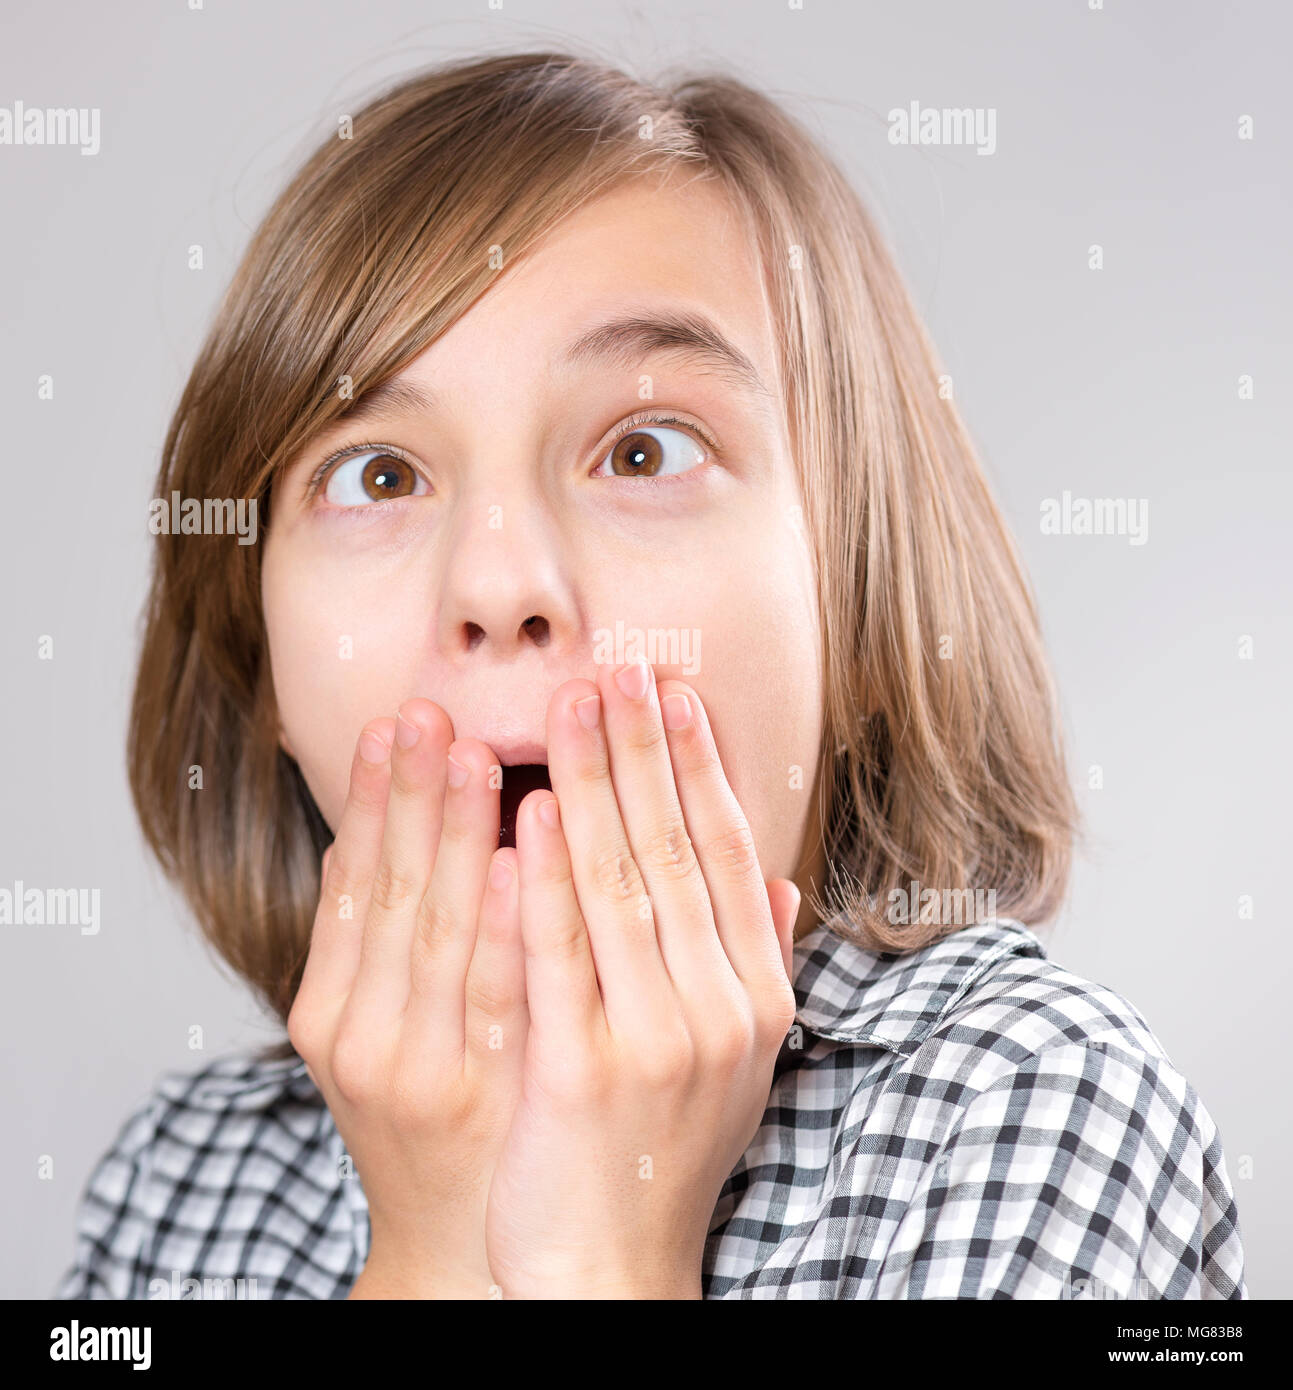 Silly girl rendendo grimace - Funny Face. Bambino su sfondo grigio. Emotional ritratto di adolescente caucasico guardando la fotocamera. Foto Stock